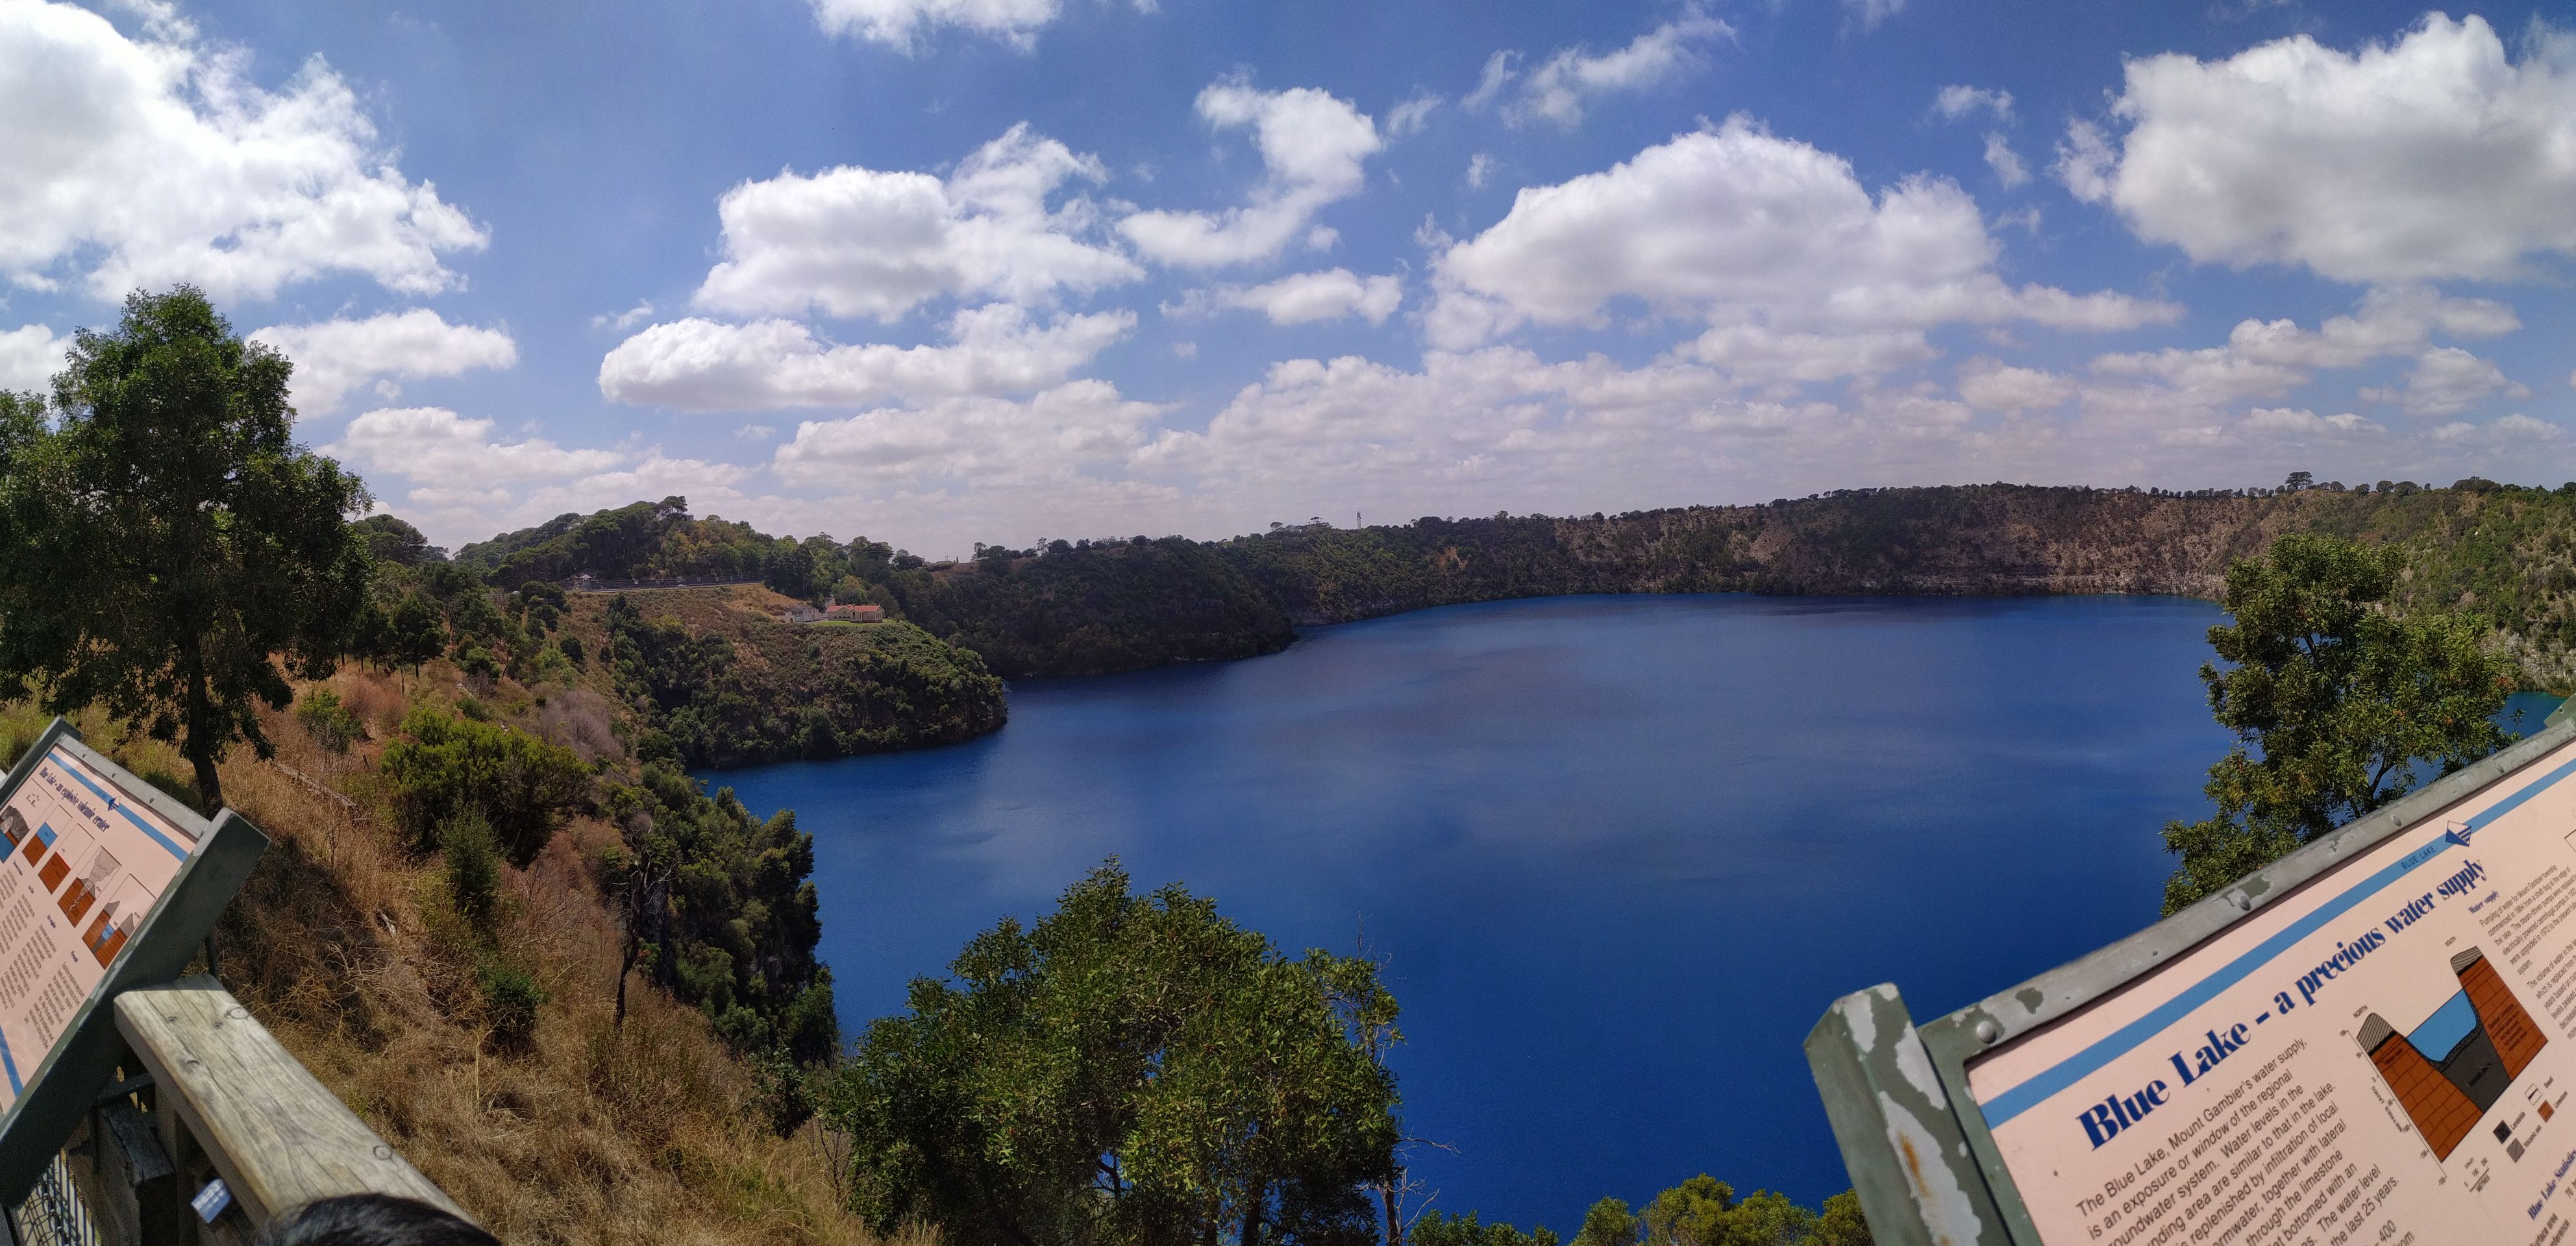 澳大利亚南澳的蓝湖在夏天会非常漂亮，蓝的像美丽的宝石。边上的双子湖似的湖泊则是绿色的。那里还有著名的